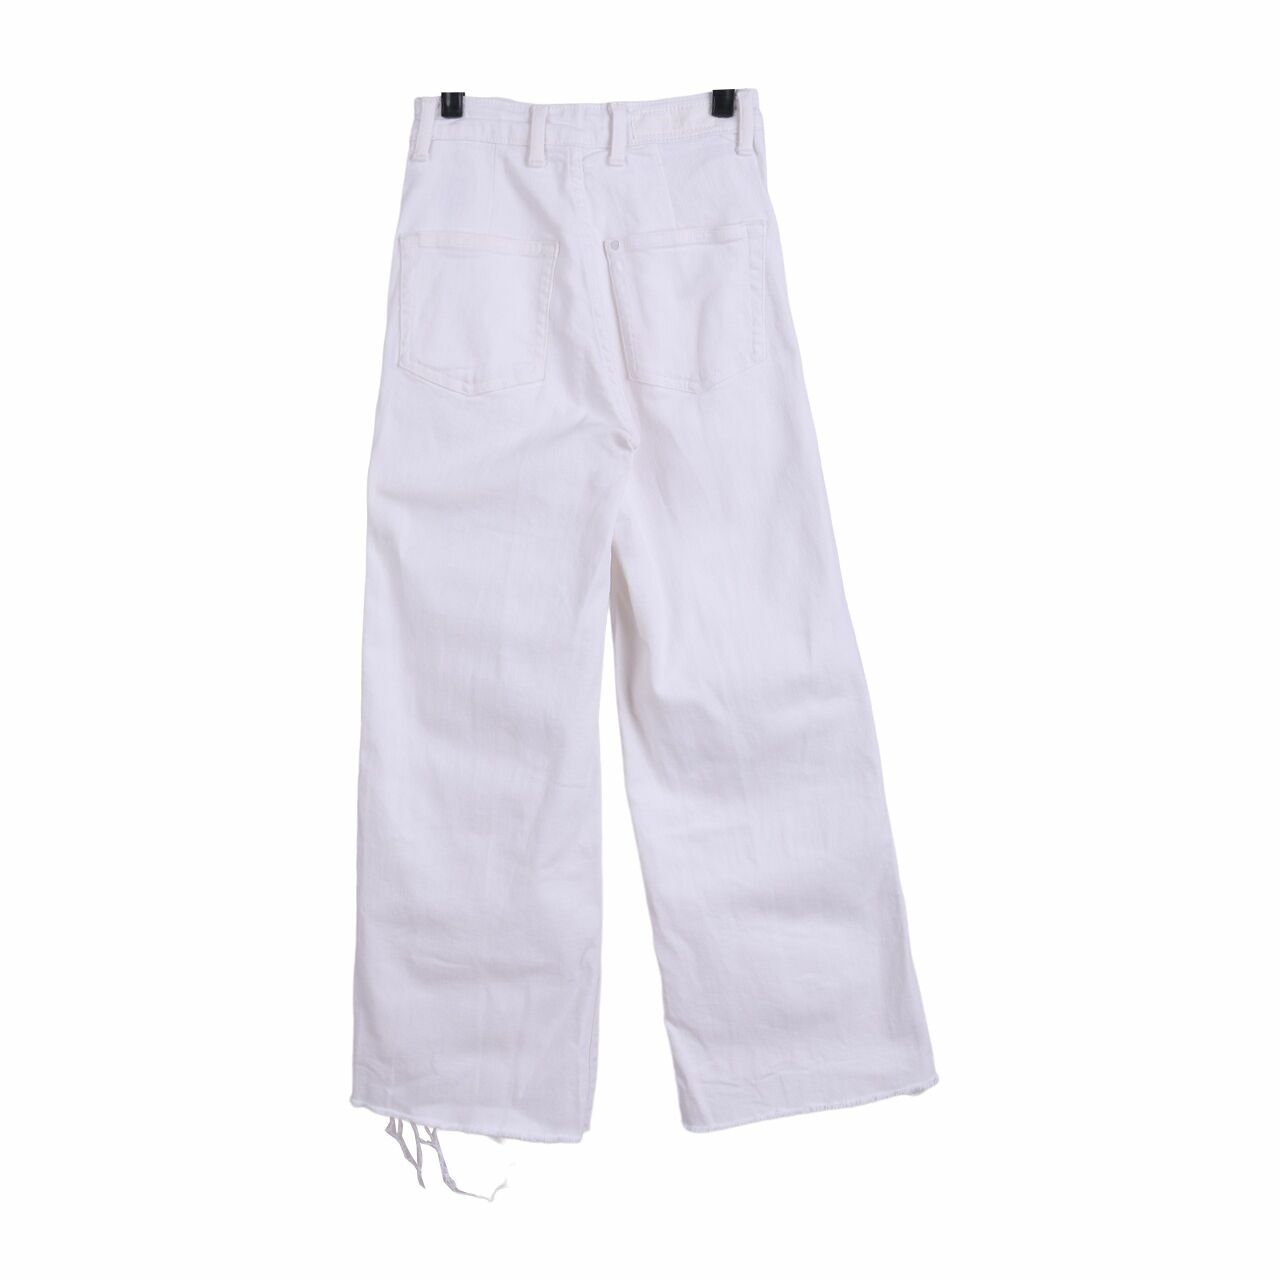 H&M White Long Pants